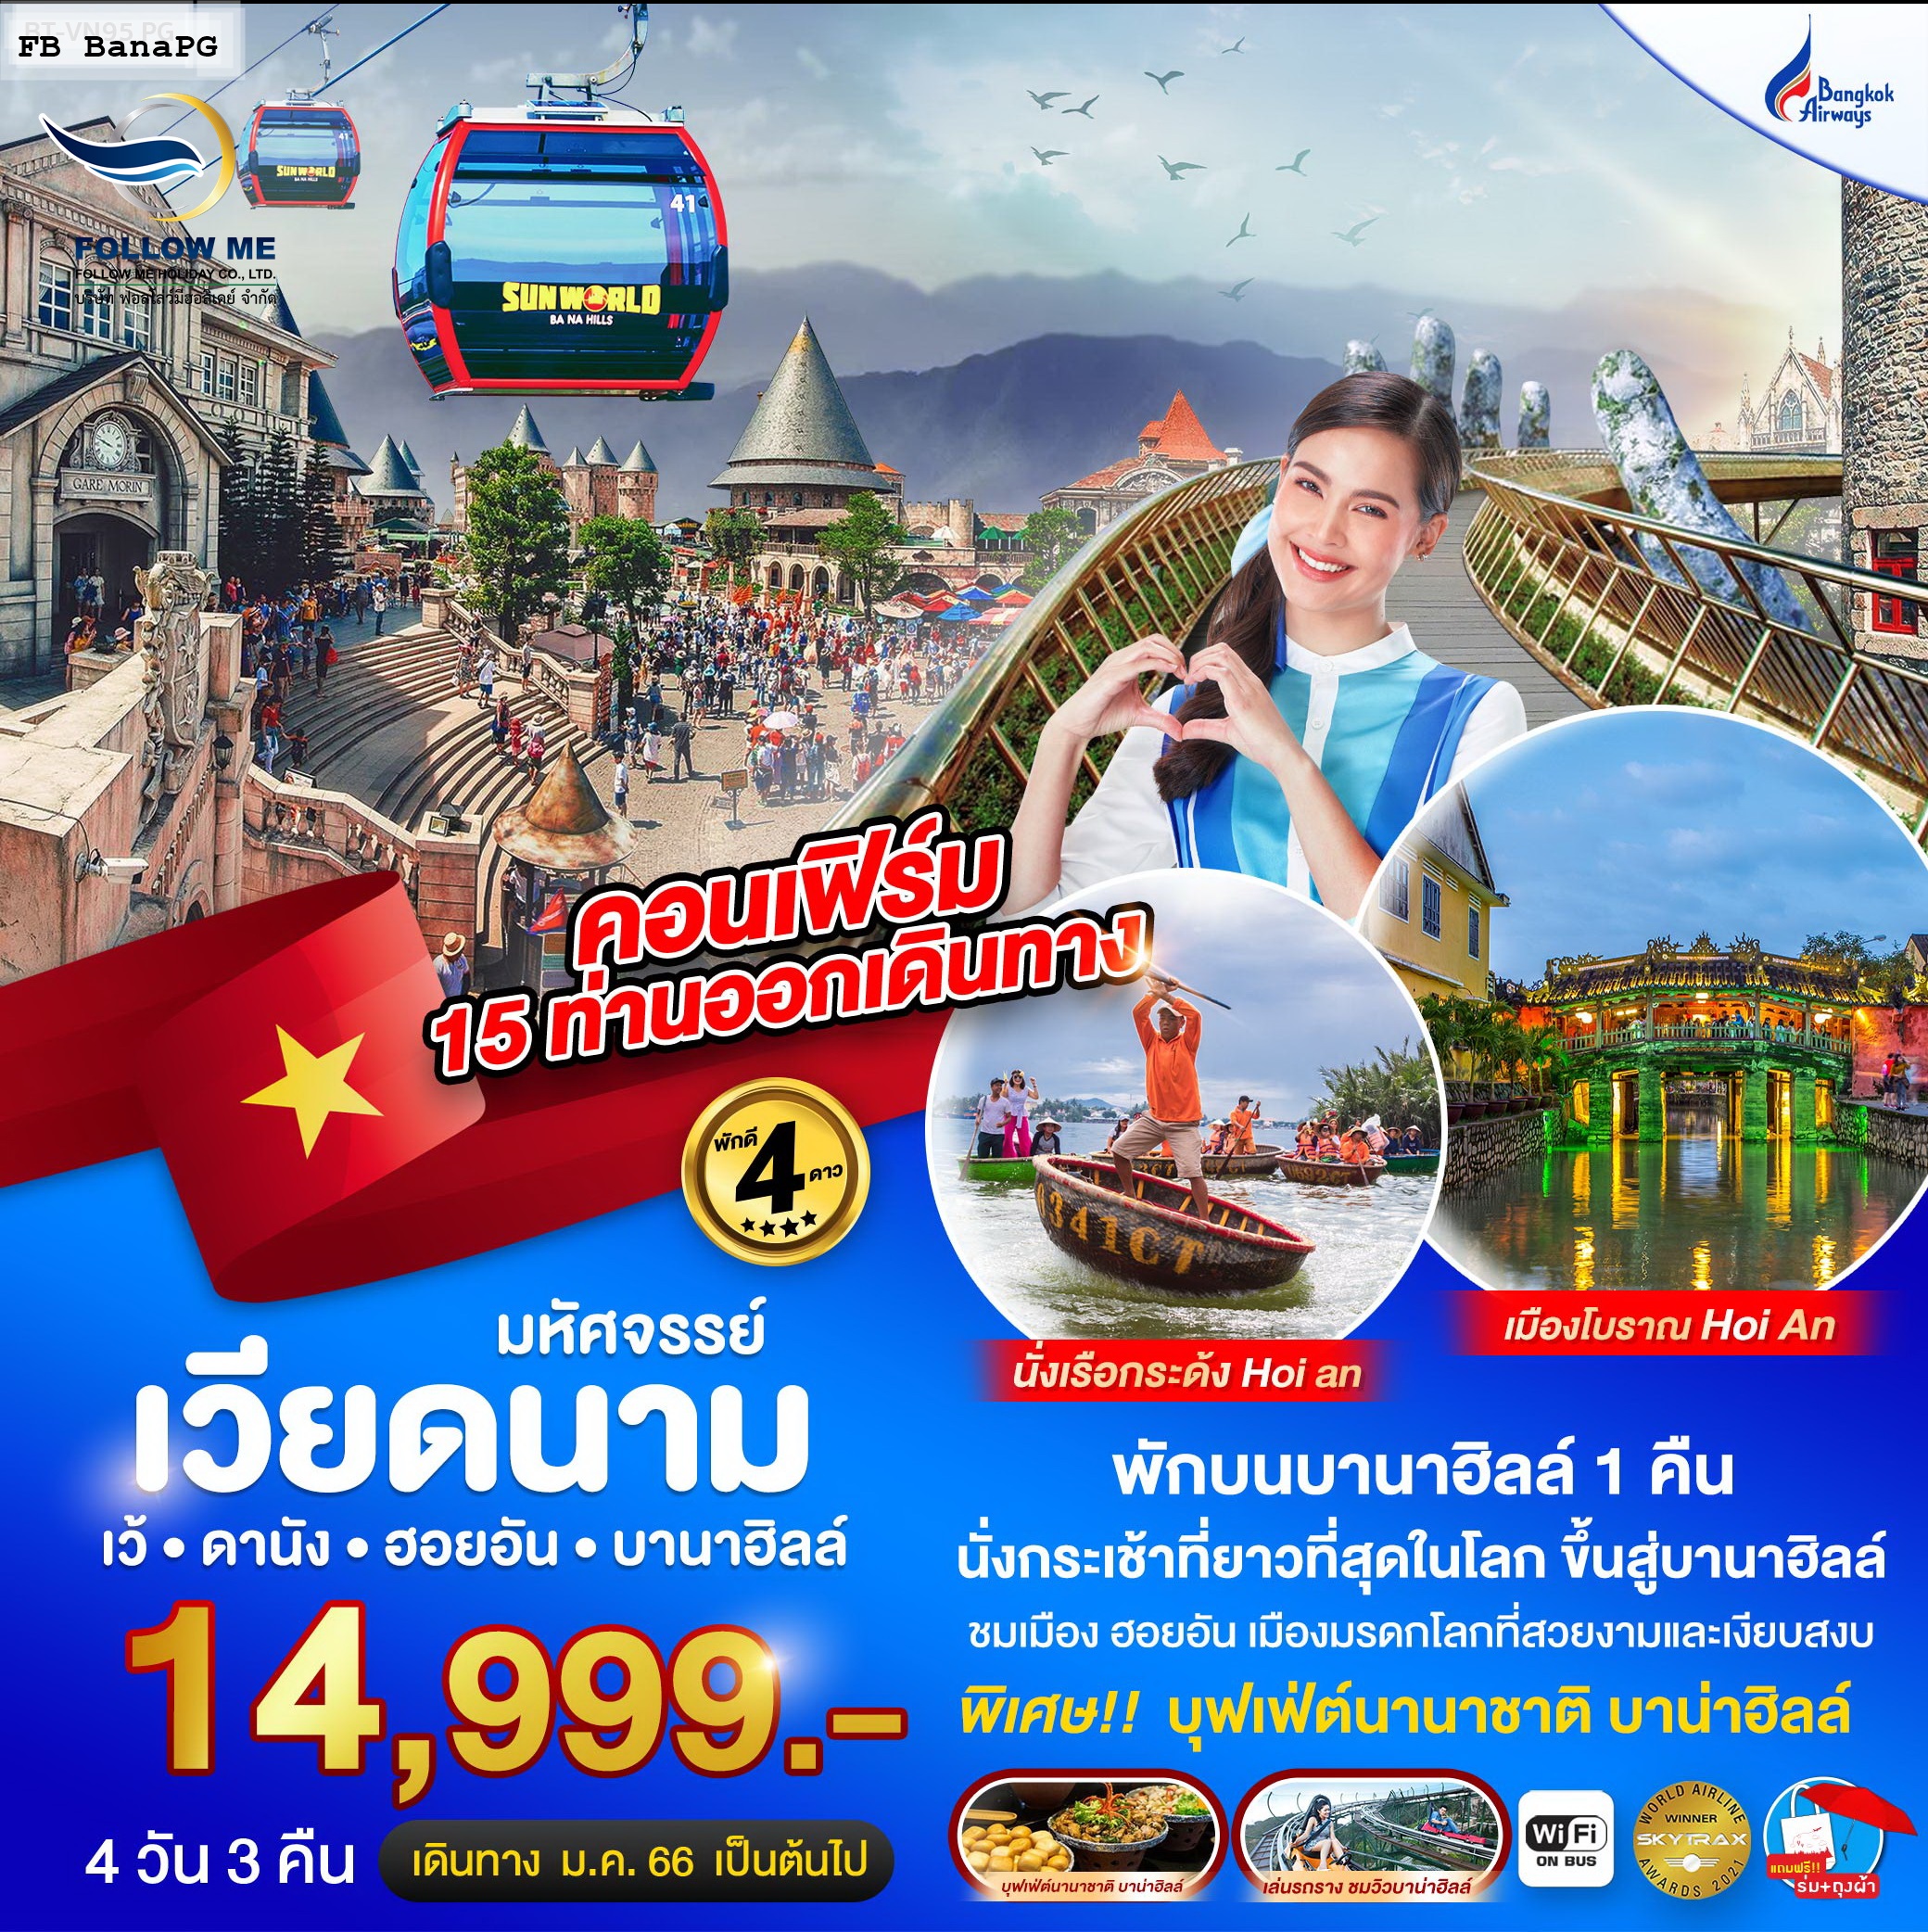 ทัวร์เวียดนาม เว้ ดานัง ฮอยอัน บานาฮิลล์ 4 วัน 3 คืน by Bangkok Airways